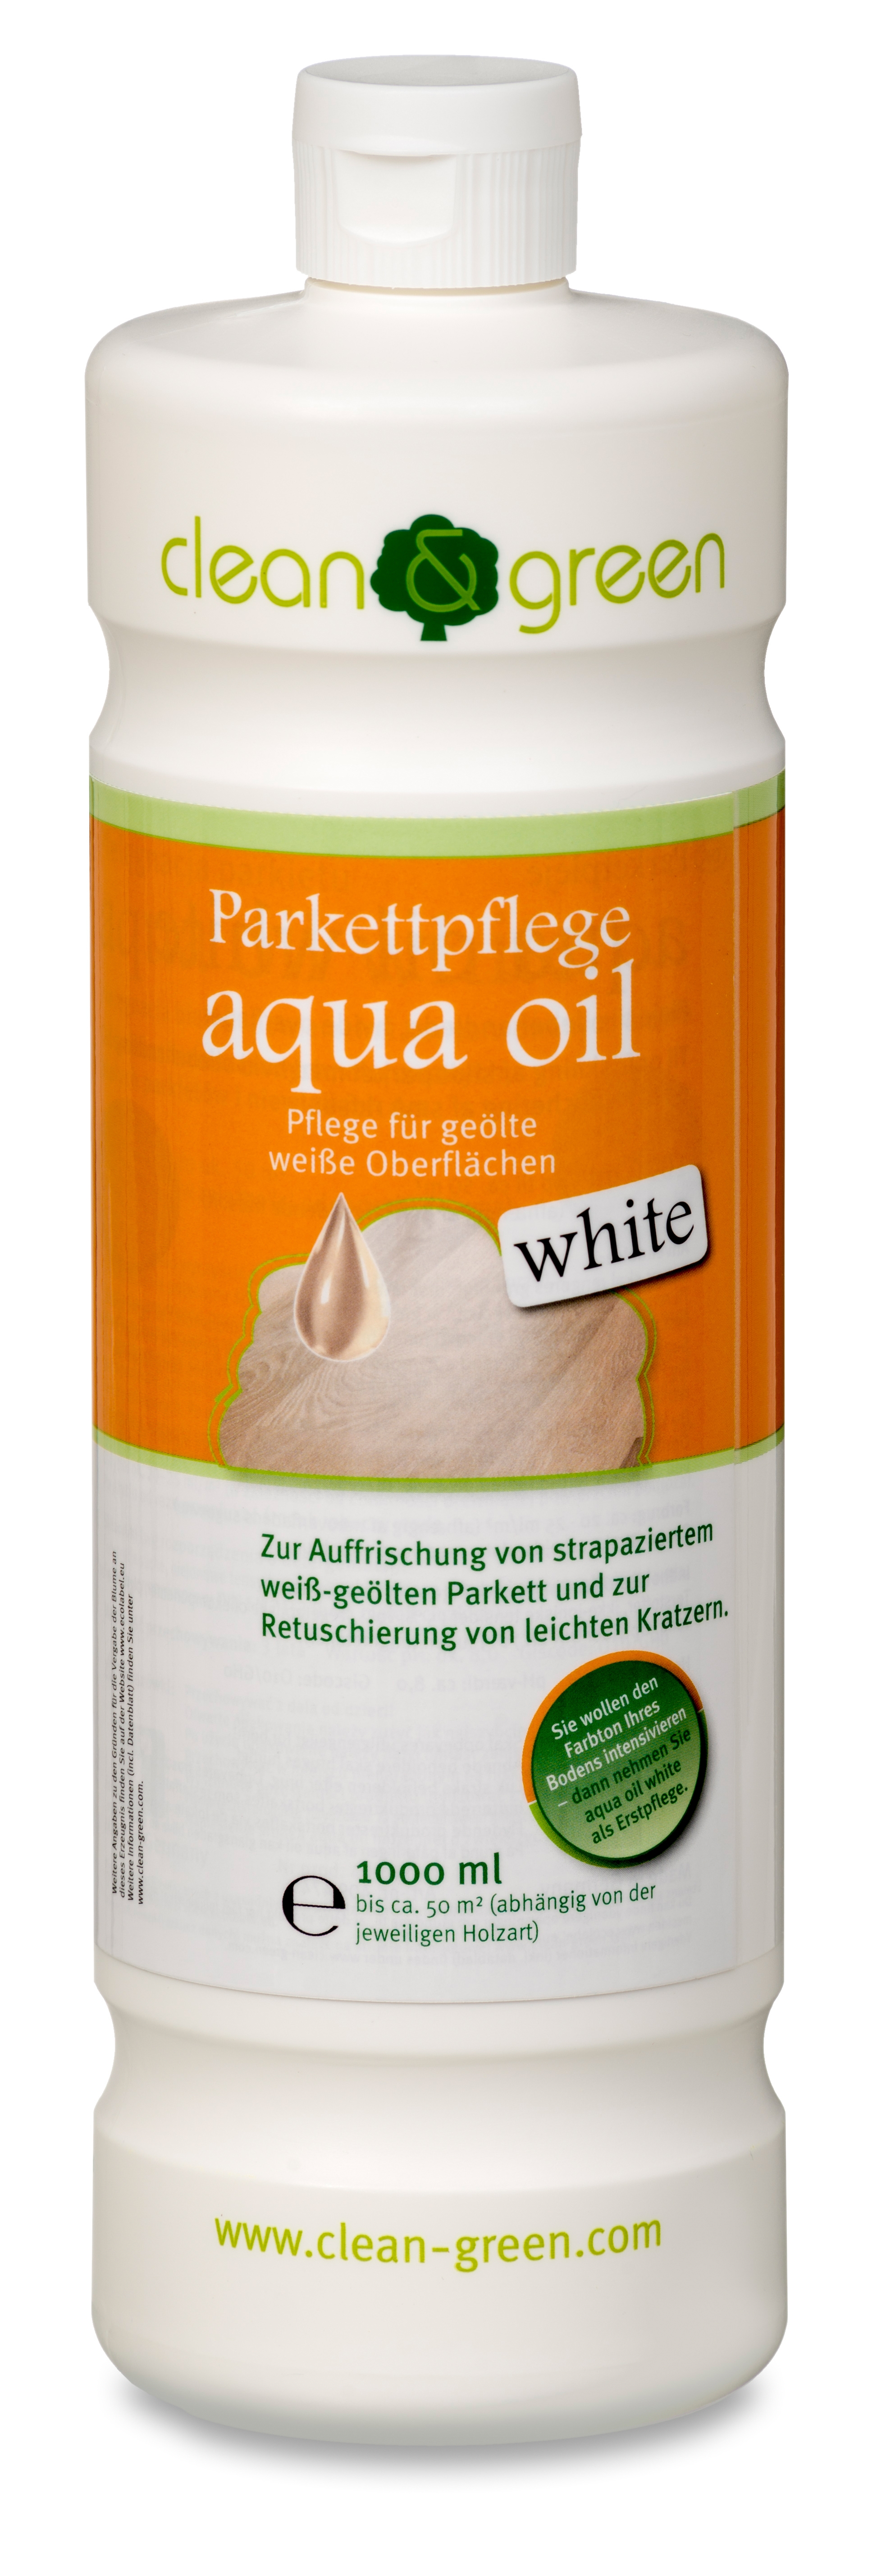 clean & green aqua oil white